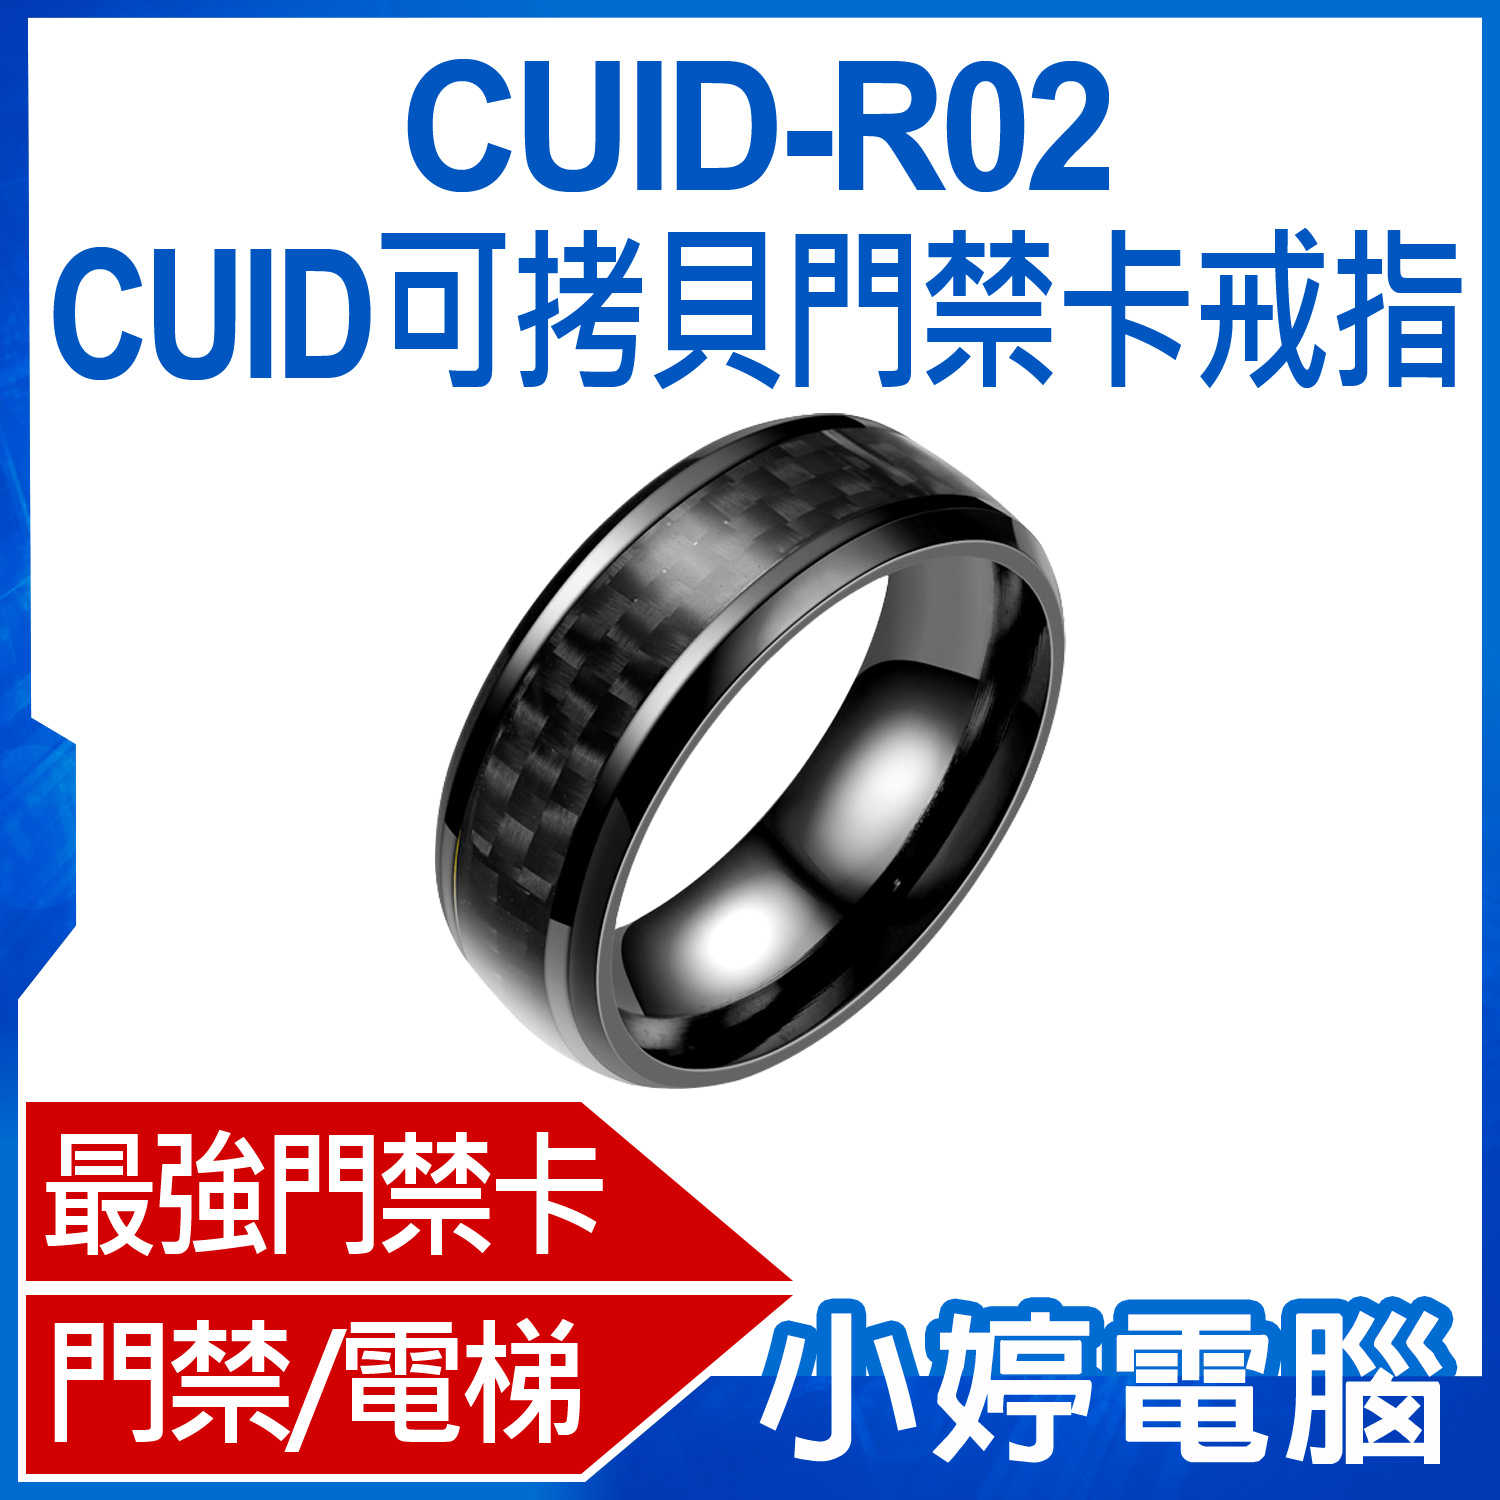 【小婷電腦】CUID-R02 CUID可拷貝門禁卡戒指 最強門禁卡 門禁/電梯/保全加密卡/考勤感應指環 遙控手指環